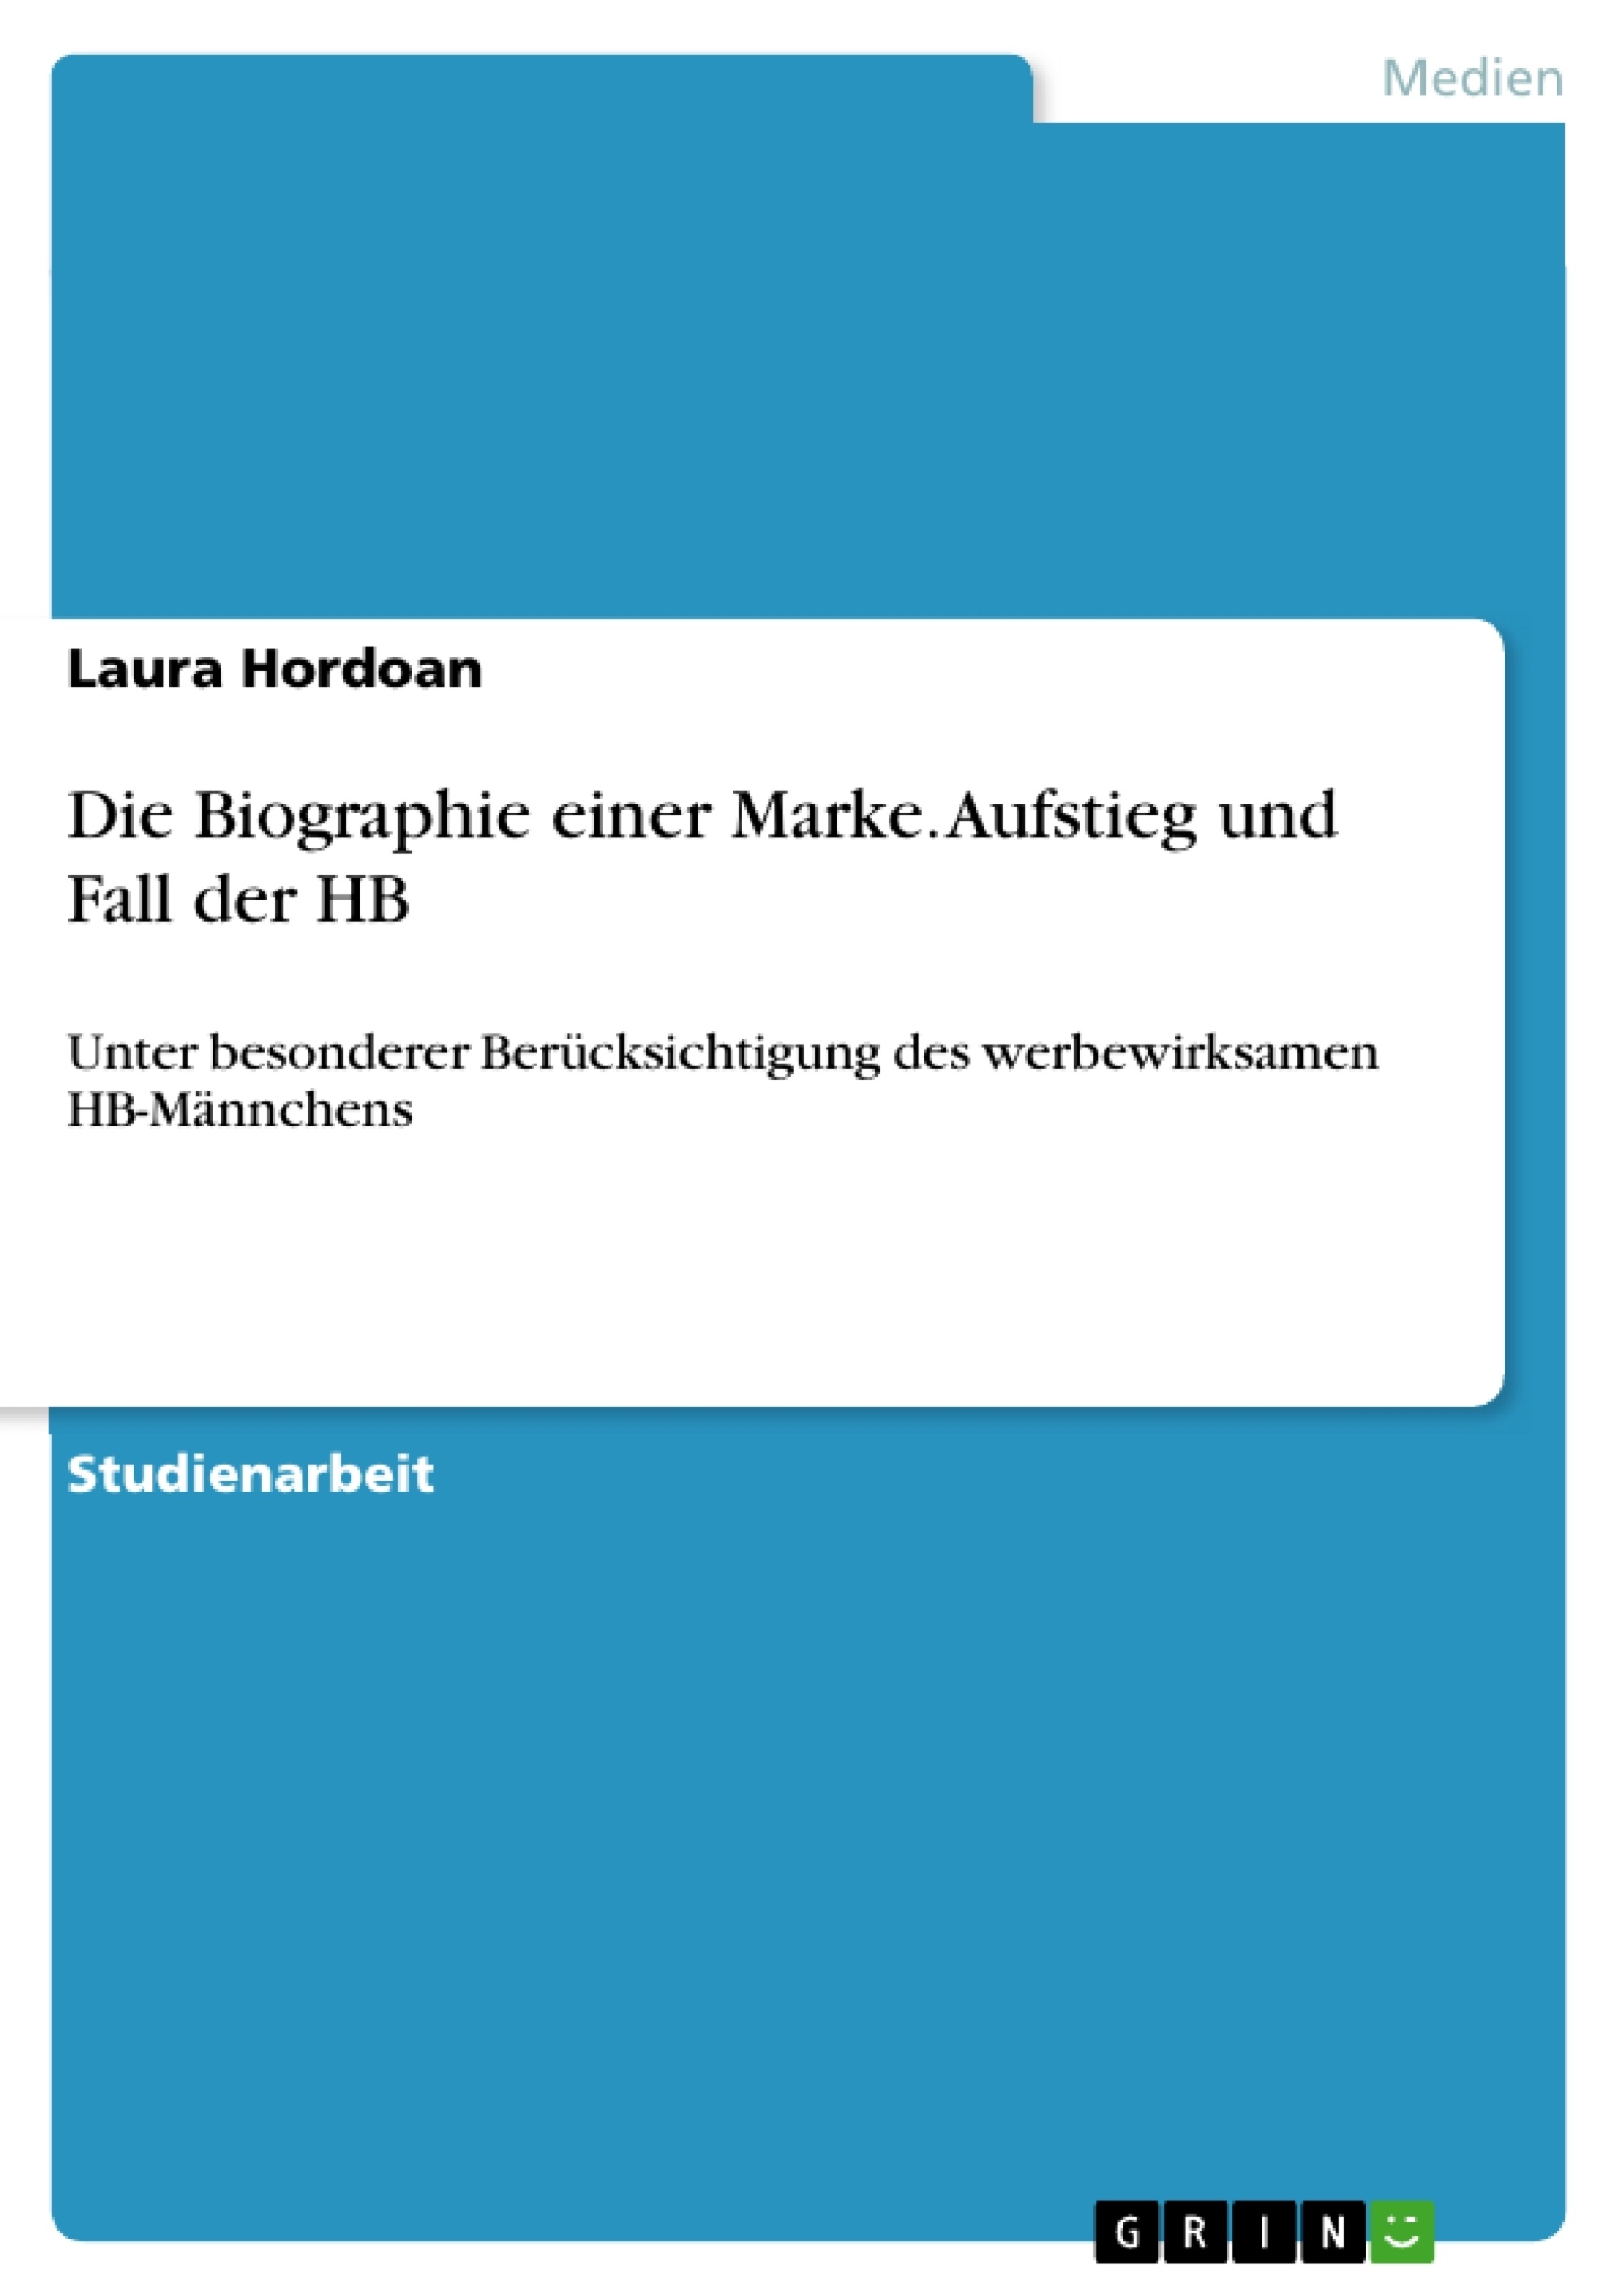 Title: Die Biographie einer Marke. Aufstieg und Fall der HB